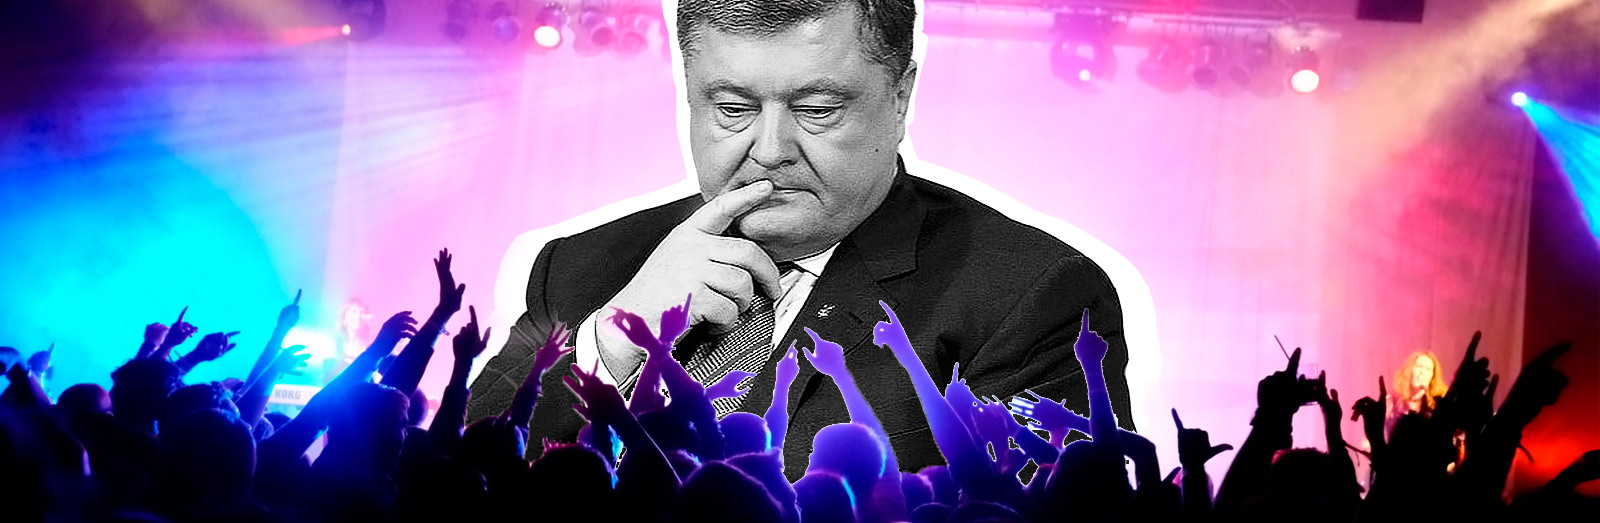 Сам себе президент. Как Порошенко идет на выборы и почему ищет поддержки Вакарчука